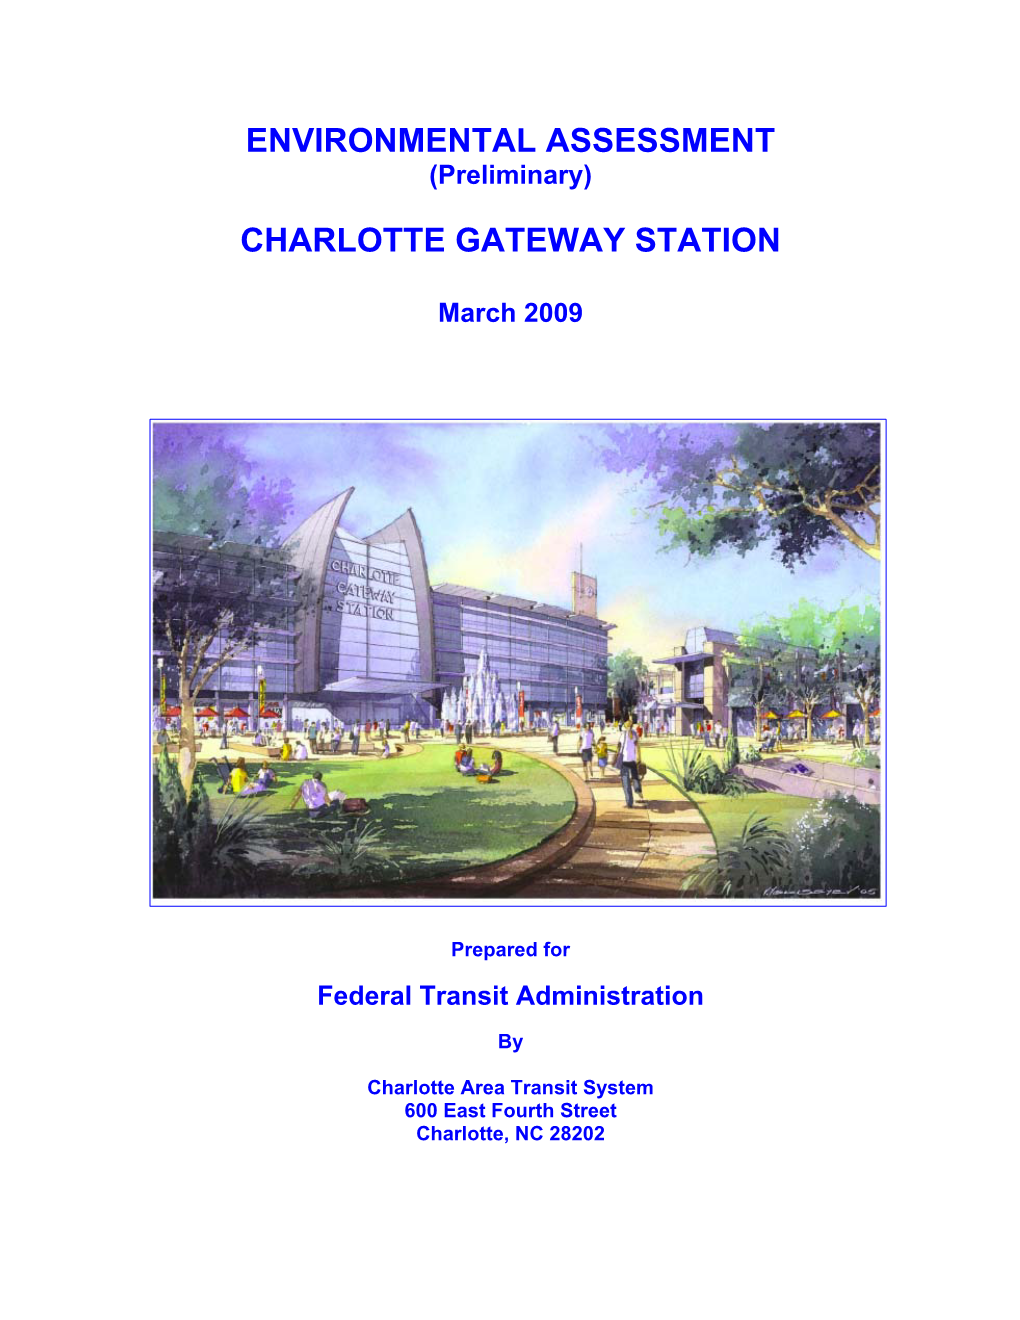 Environmental Assessment Charlotte Gateway Station